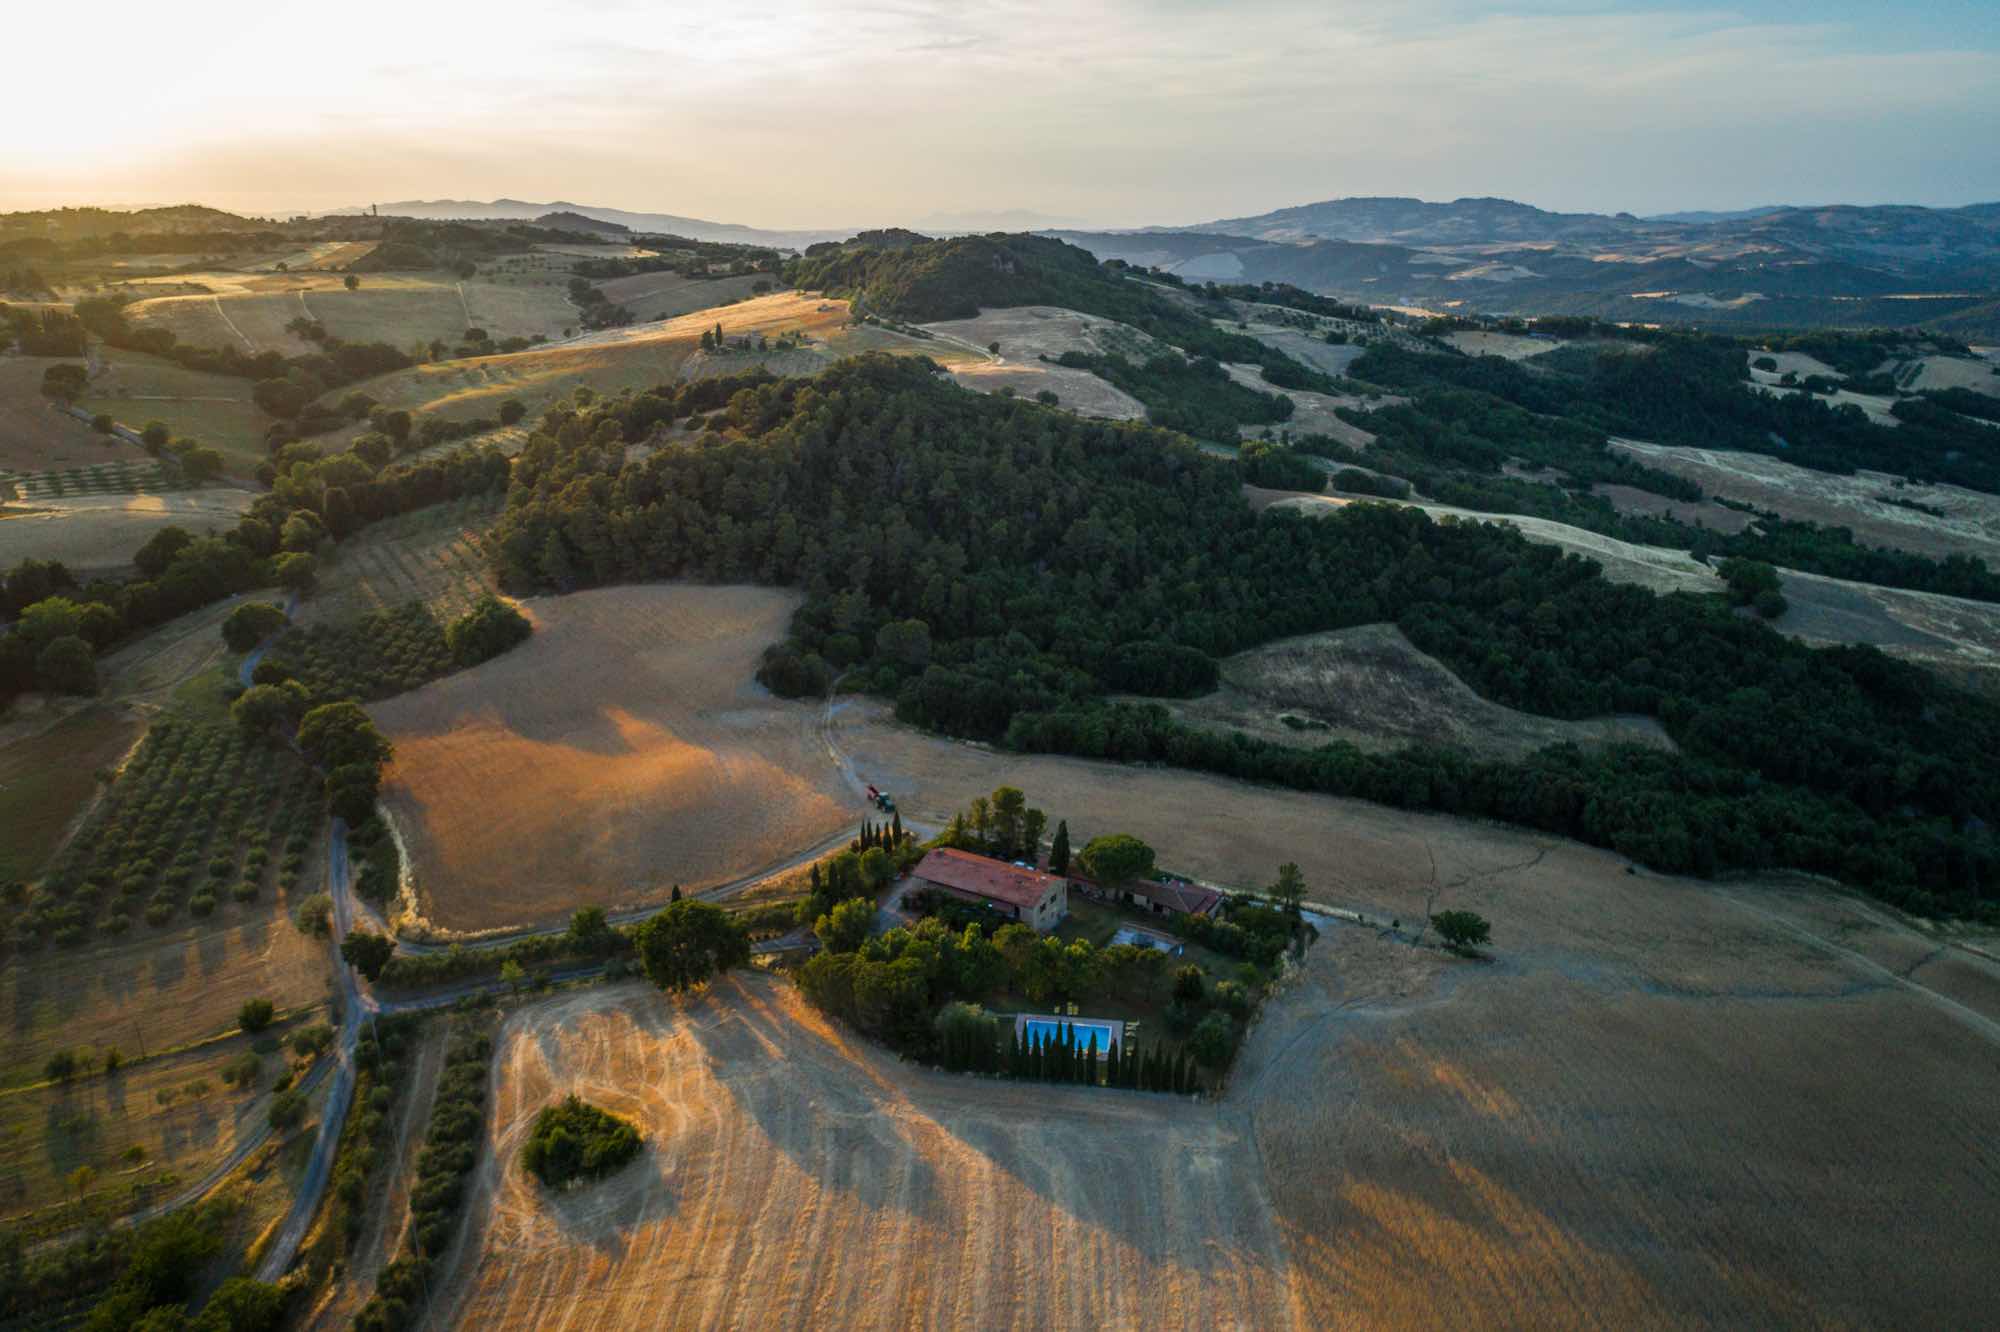 L'Agriturismo San Carlo è una delle strutture che accettano il bonus vacanze in Toscana